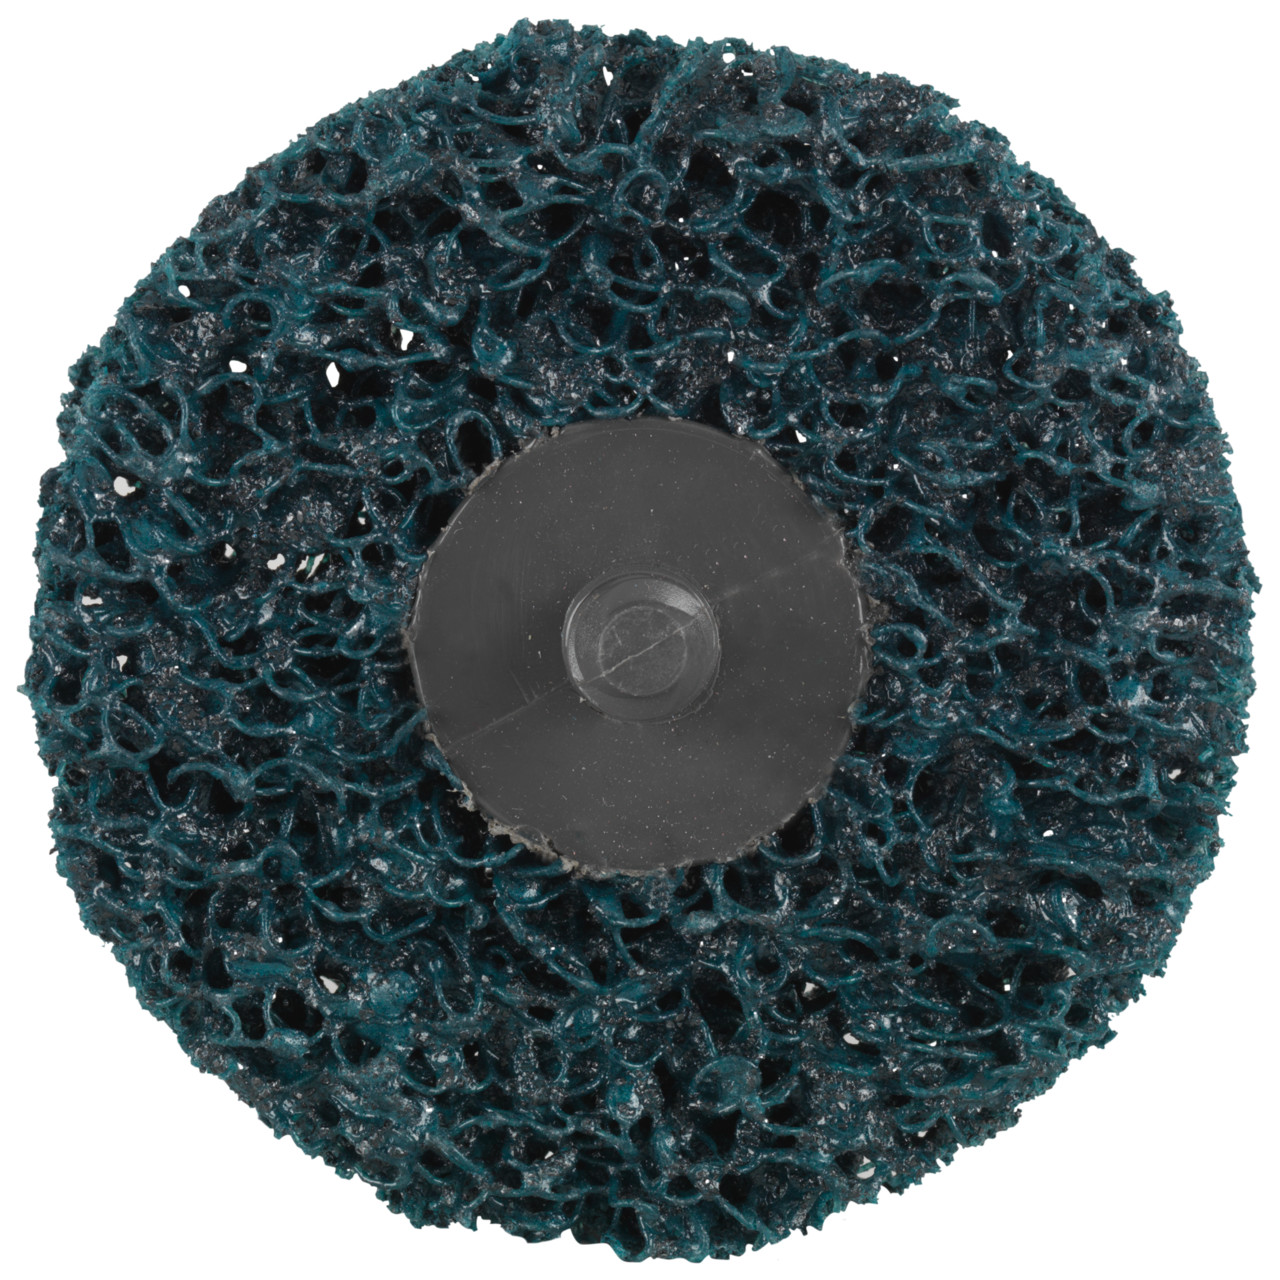 Tyrolit Grove reinigingsschijf afmeting 50xR Voor staal, roestvrij staal en PVC, C GROB, vorm: QDISC, Art. 112602